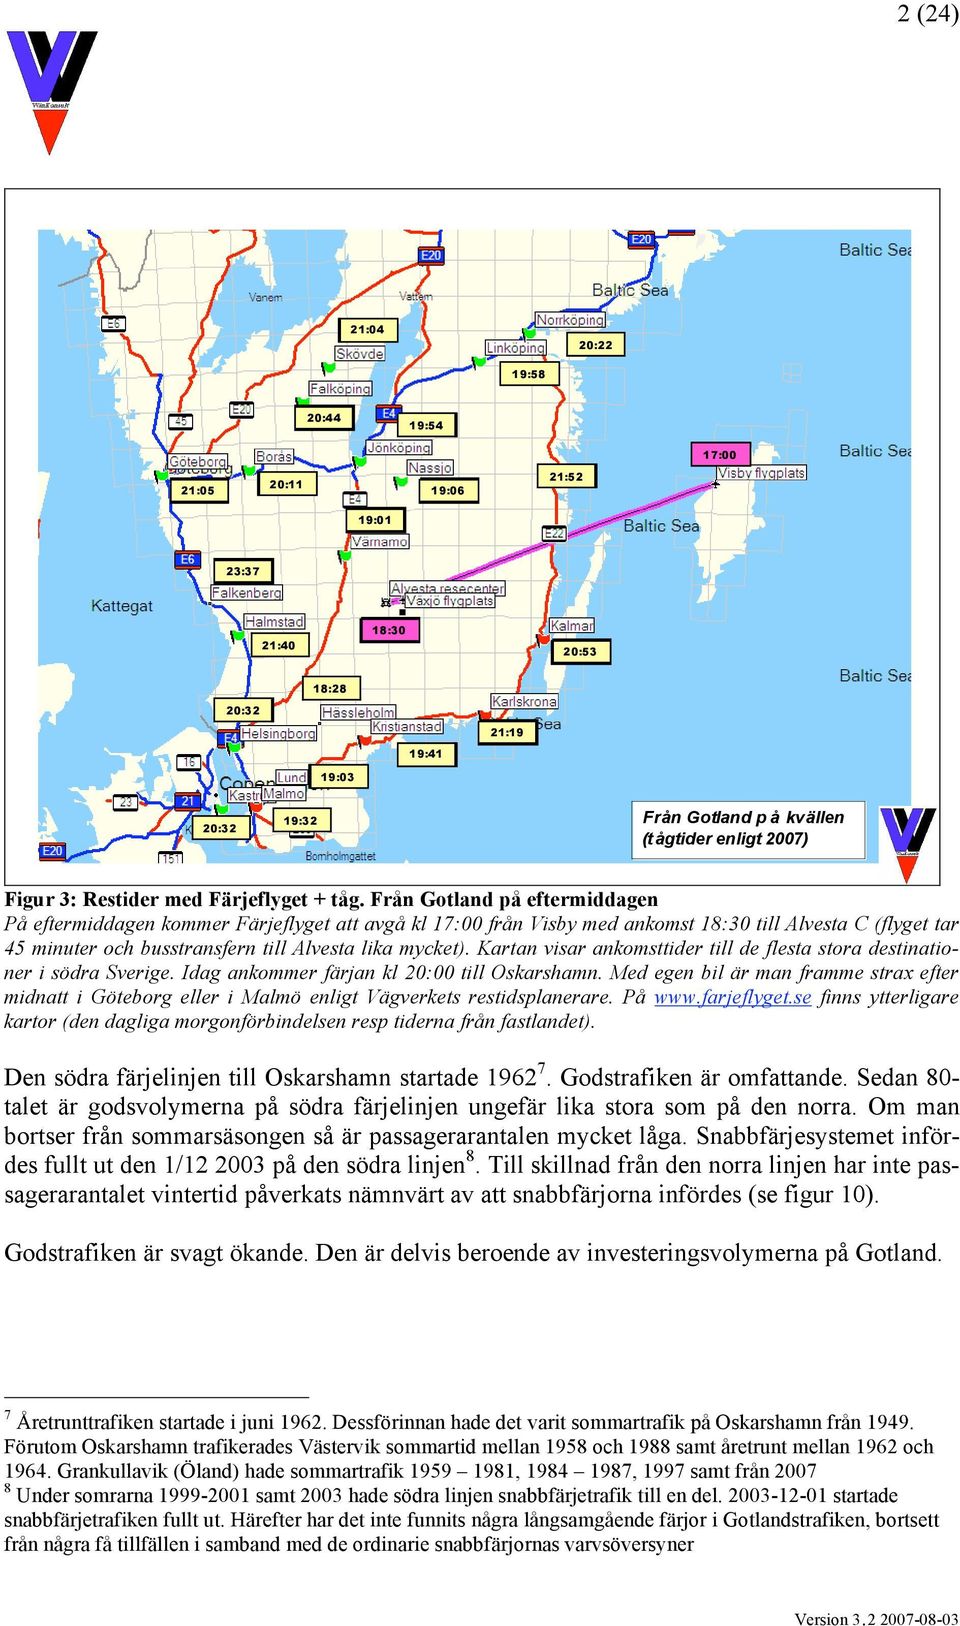 Från Gotland på eftermiddagen På eftermiddagen kommer Färjeflyget att avgå kl 17:00 från Visby med ankomst 18:30 till Alvesta C (flyget tar 45 minuter och busstransfern till Alvesta lika mycket).